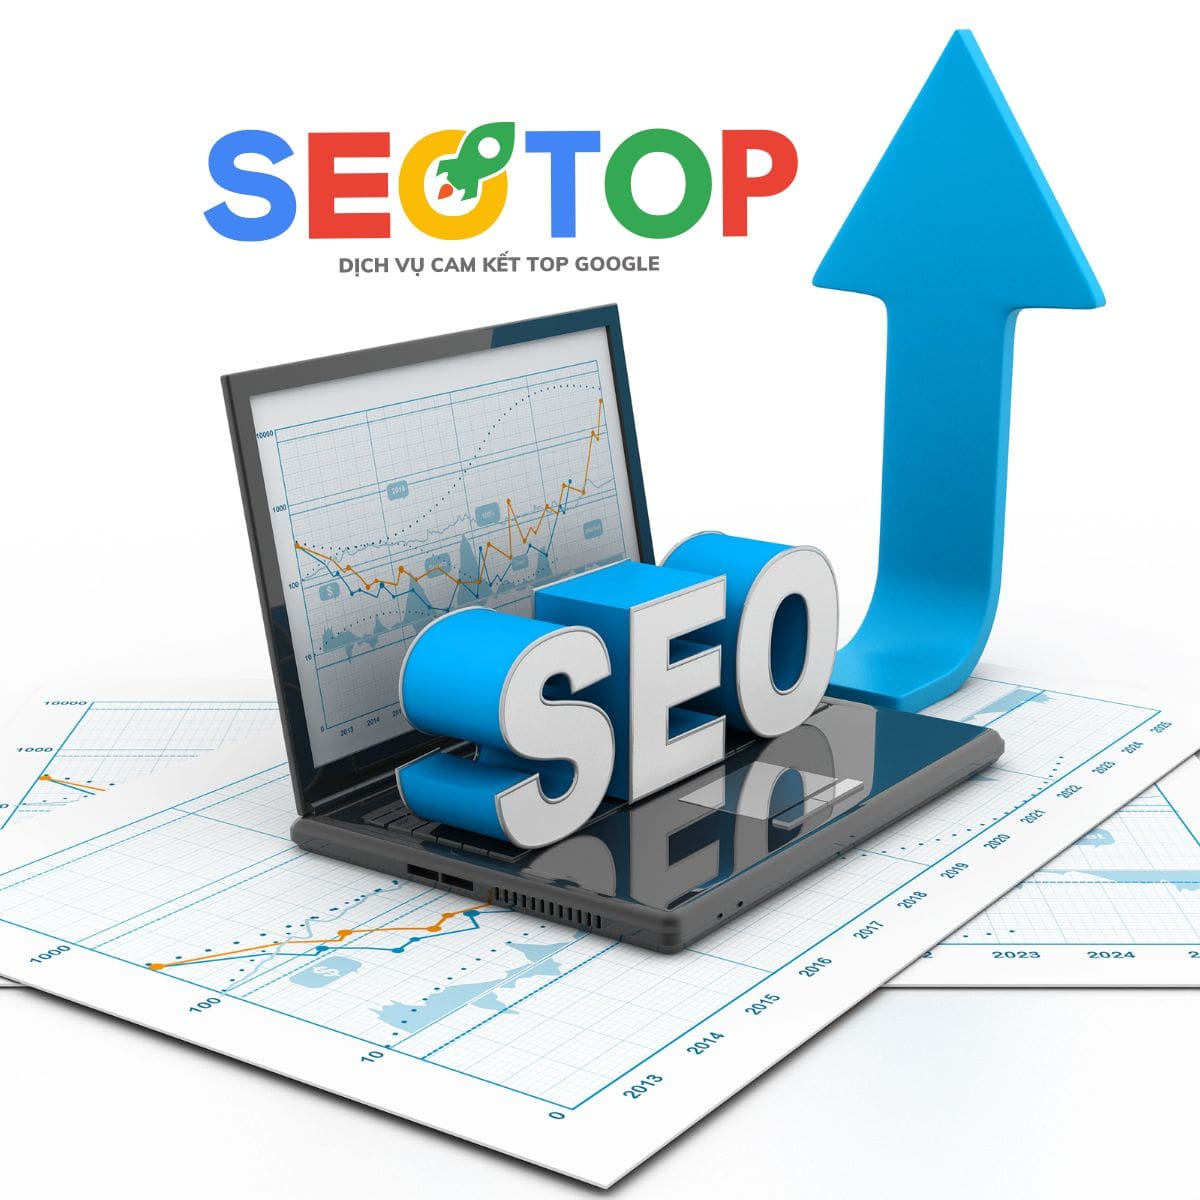 quy trình thực hiện hợp đồng dịch vụ seo website tổng thể tại seo top